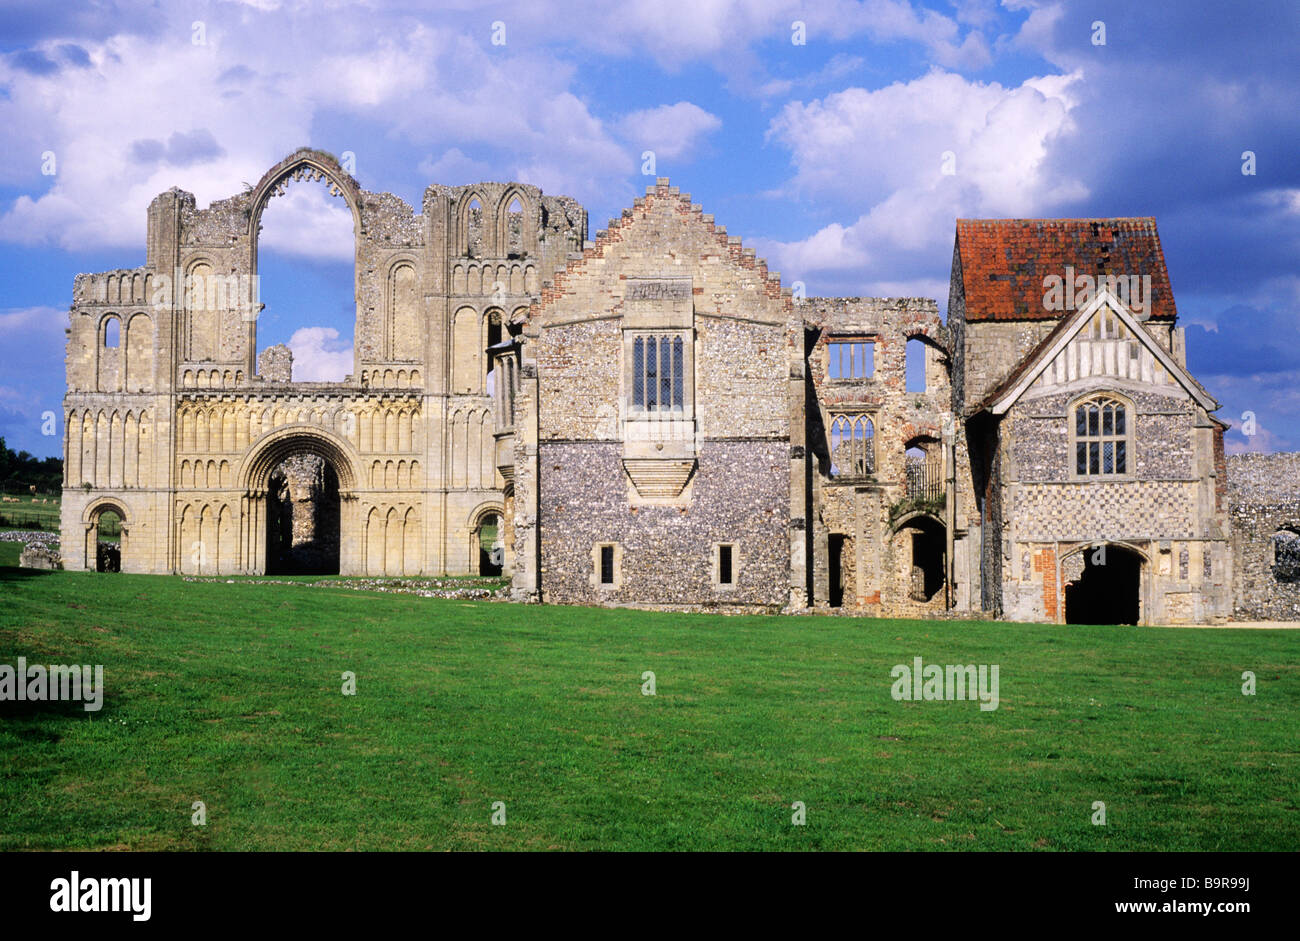 Castle Acre prieuré clunisien Norfolk House monastique médiévale Monastère East Anglia Angleterre UK English monastères prieurés Banque D'Images